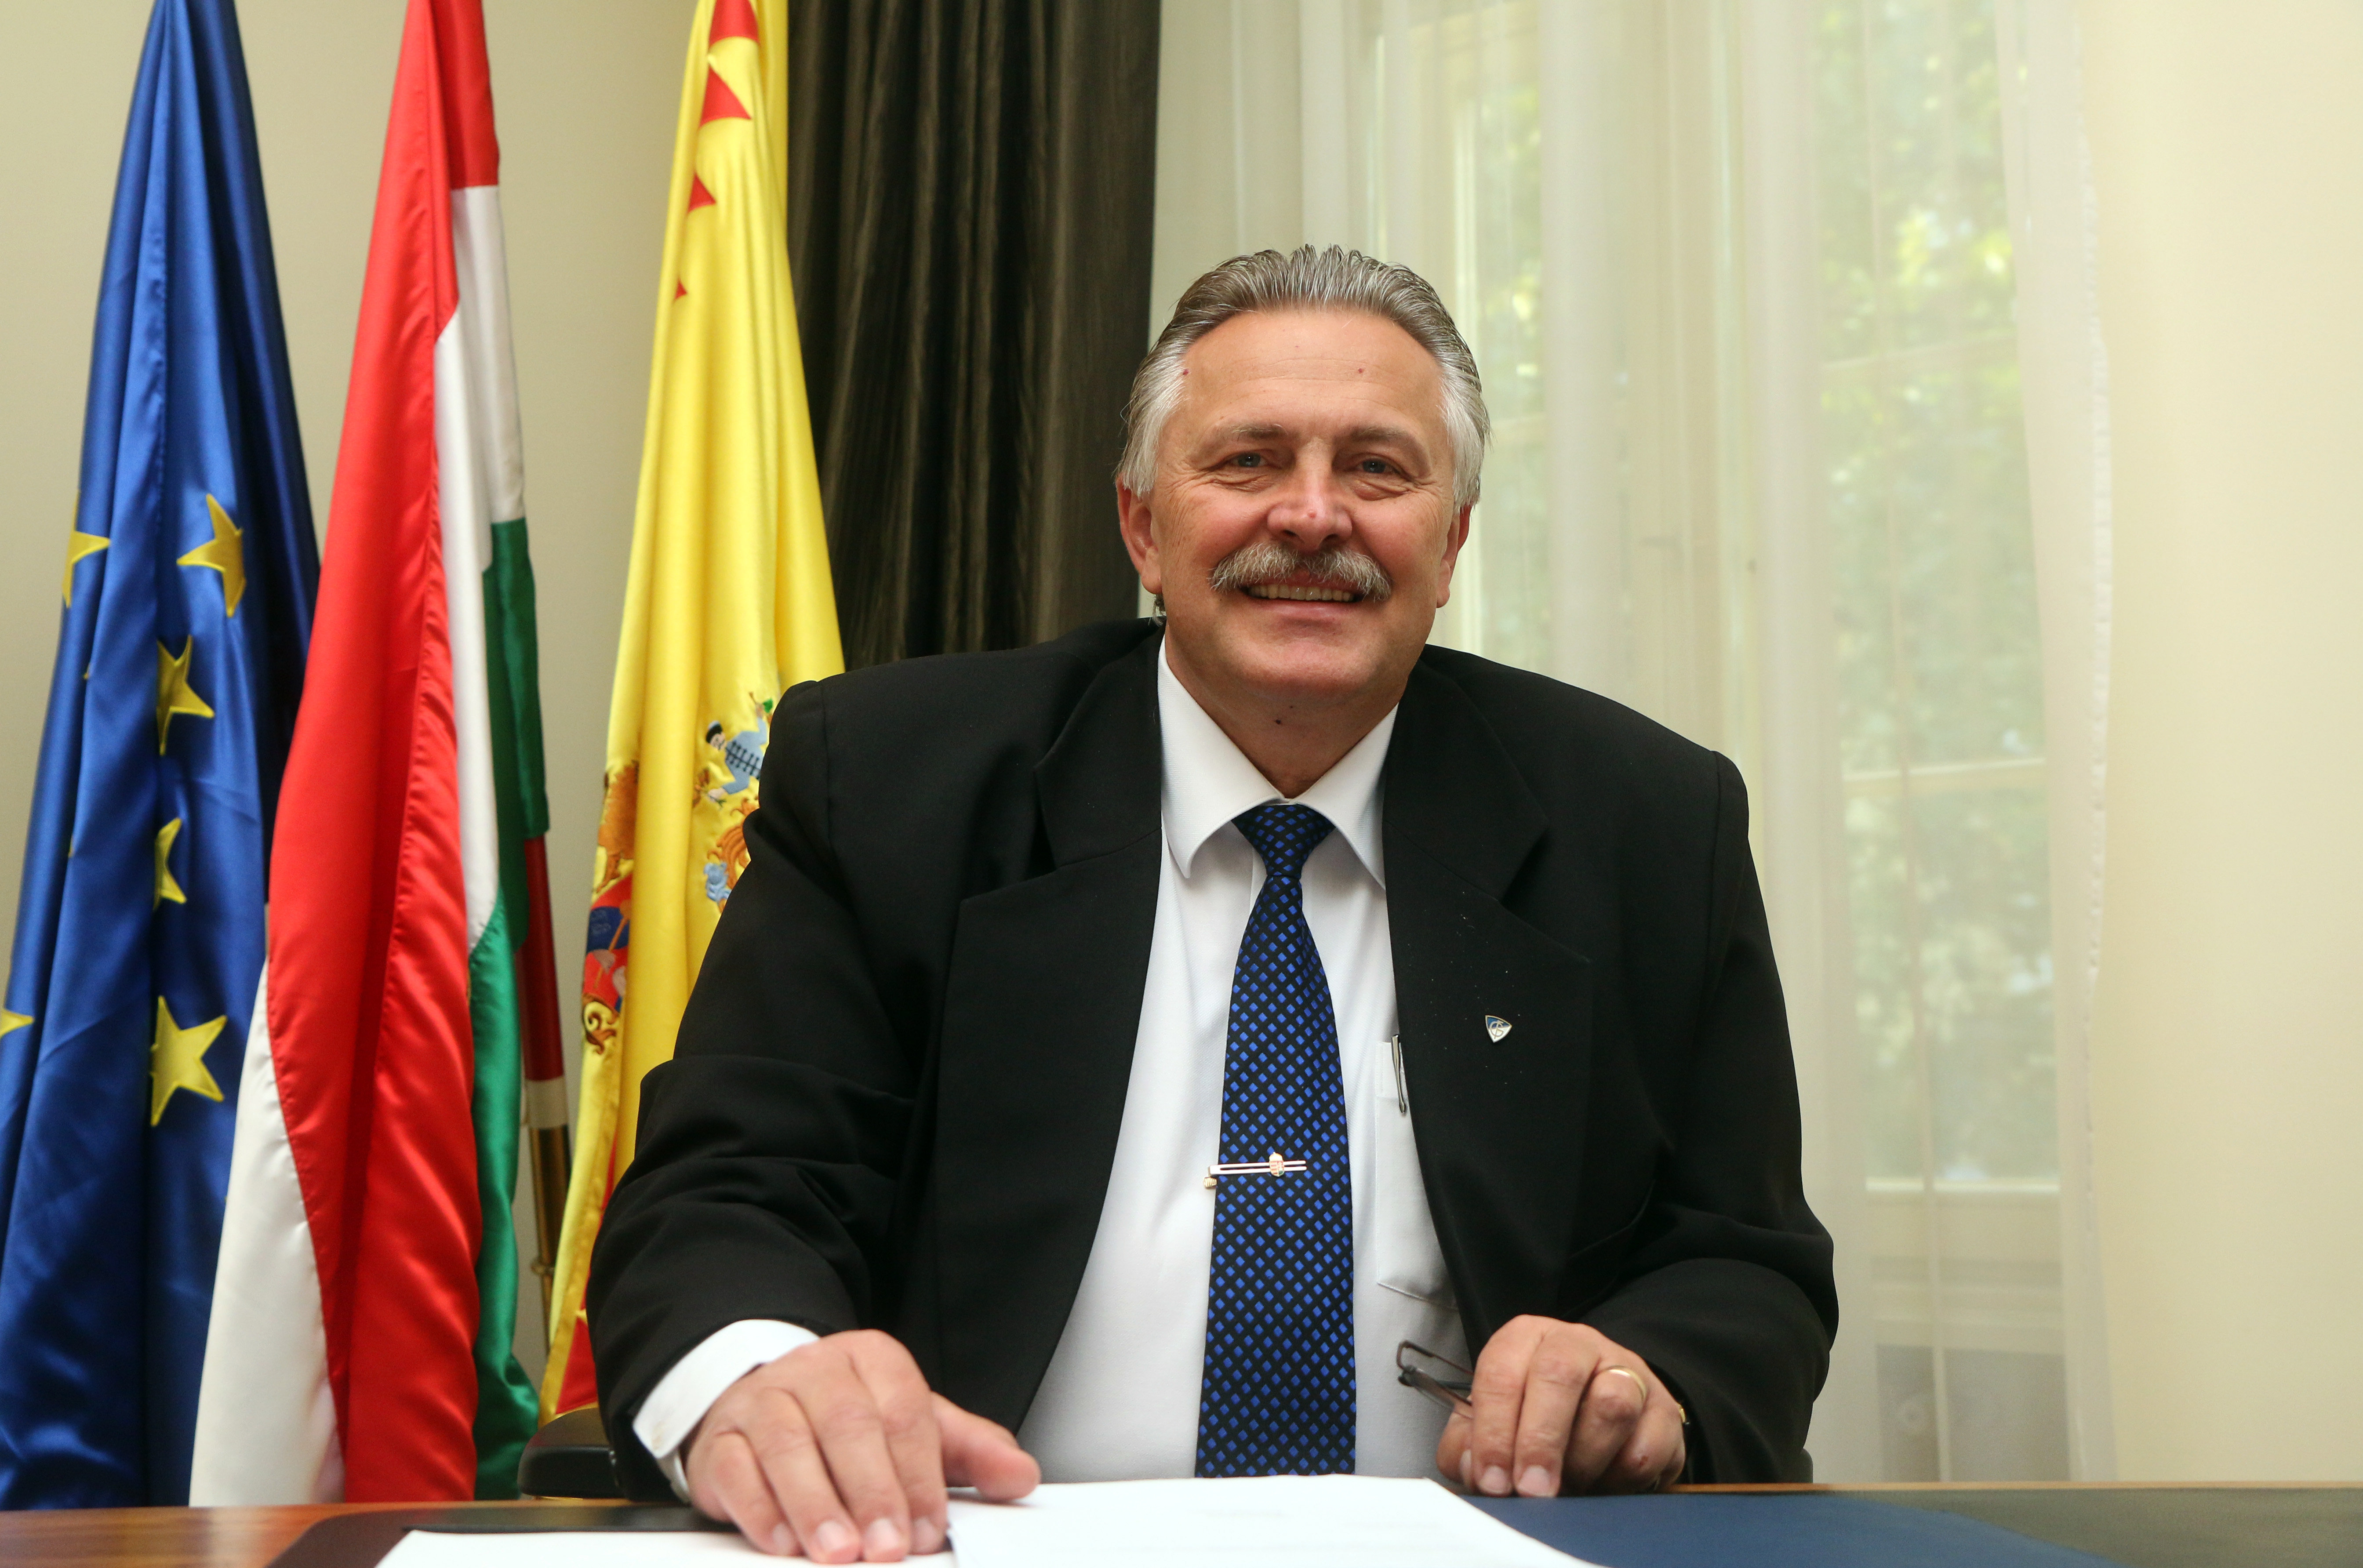 Veres Pál, Miskolc új, ellenzéki polgármestere a miskolci városházán 2019. október 18-án.